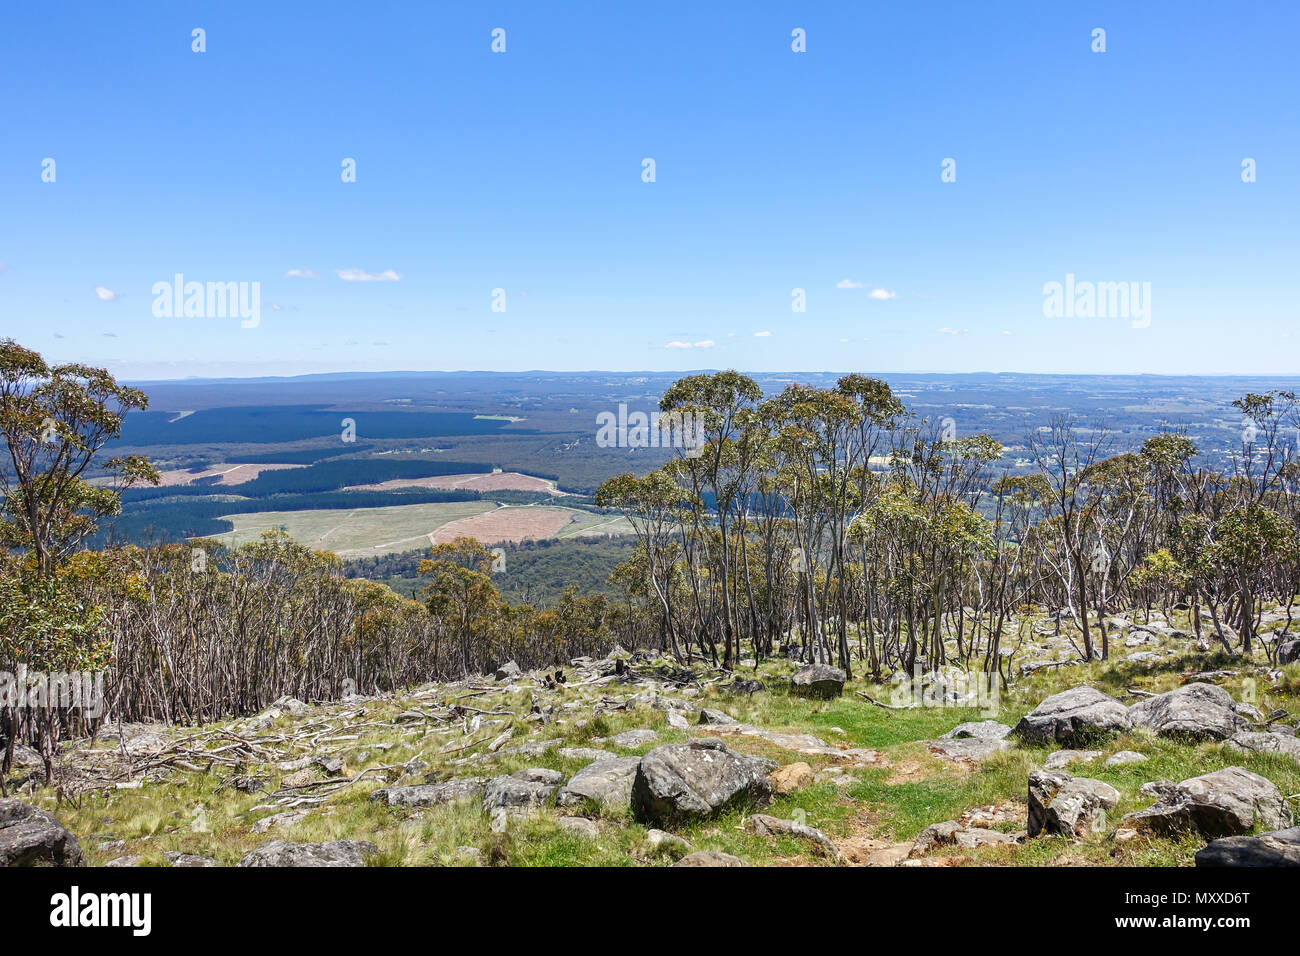 Blick vom Gipfel des Mount Macedon. Typisch australische Landschaft mit Wald, Ackerland und die Berge in der Ferne. Macedon Regional Park, VIC Australien. Stockfoto